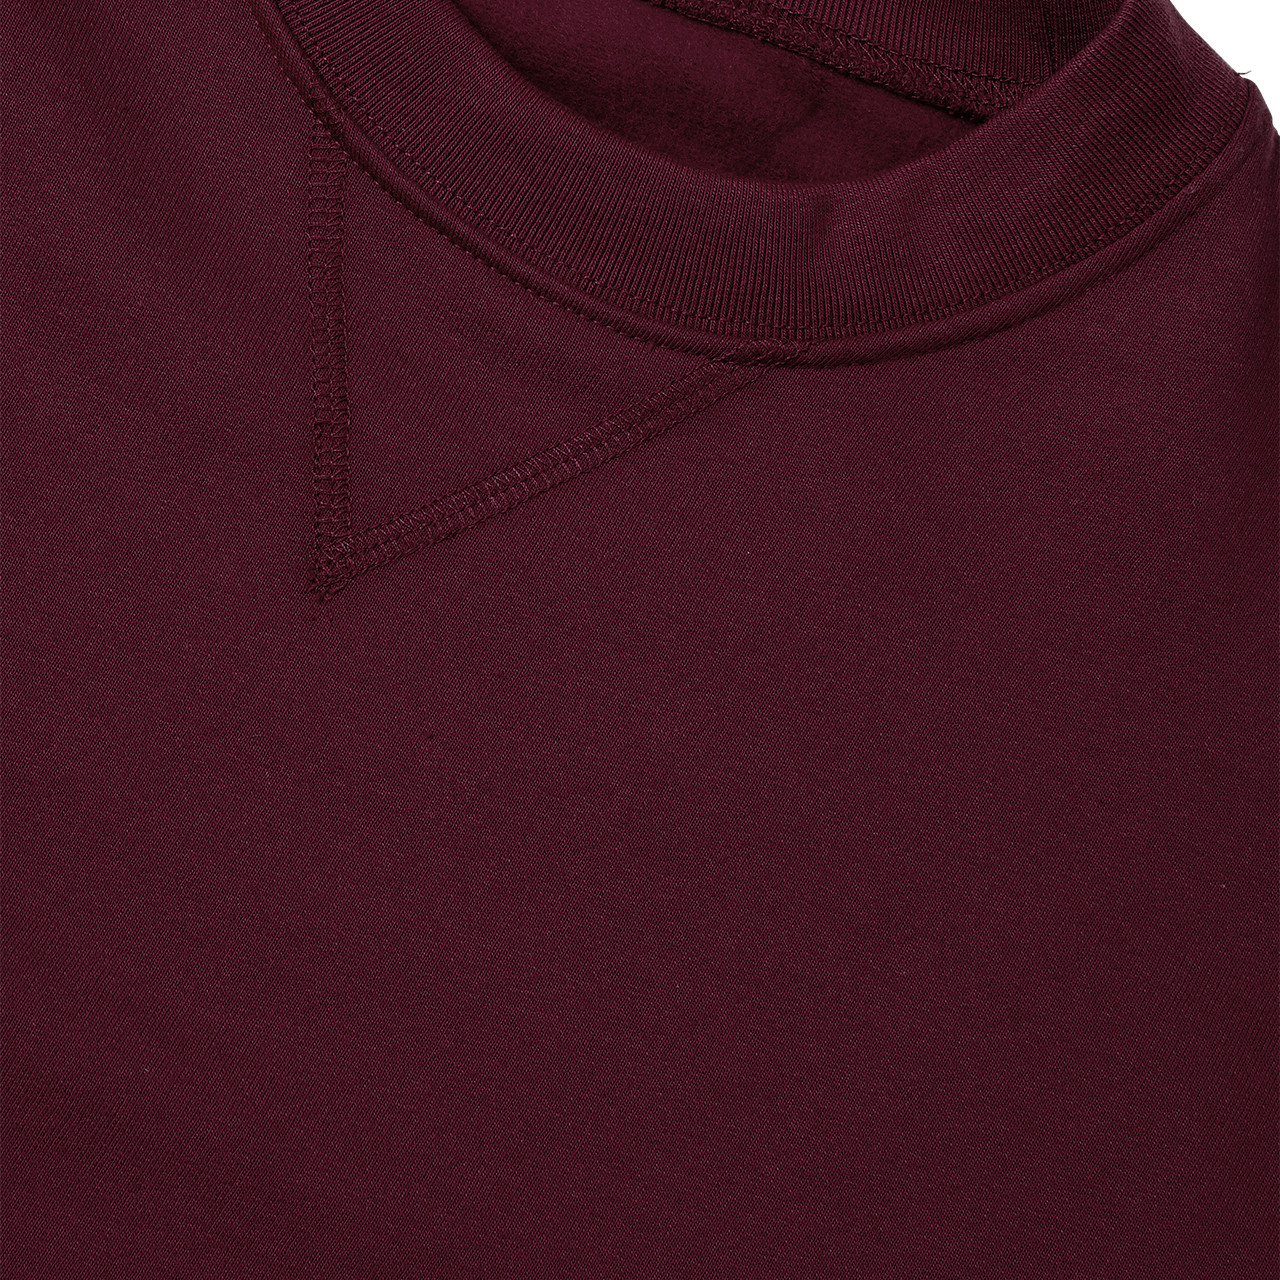 Sweatshirt Color maroon - SINSAY - 2316O-83X